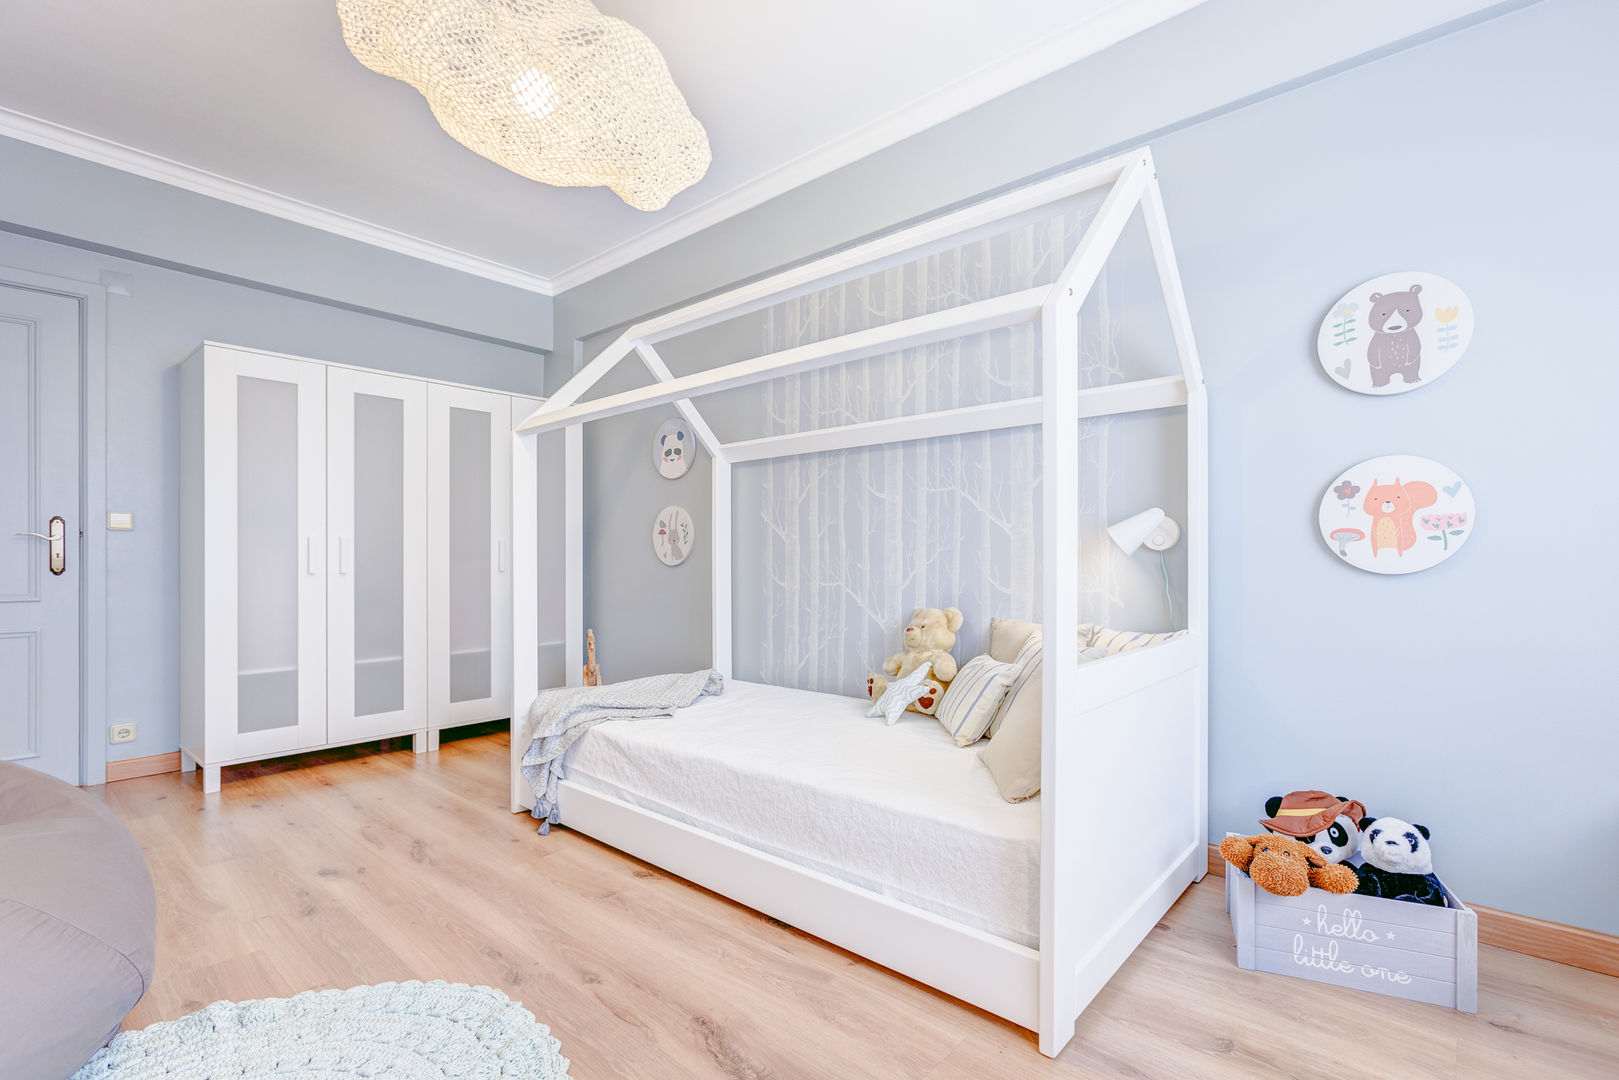 Querido Mudei a Casa – Ep 2615, Santiago | Interior Design Studio Santiago | Interior Design Studio Dormitorios infantiles